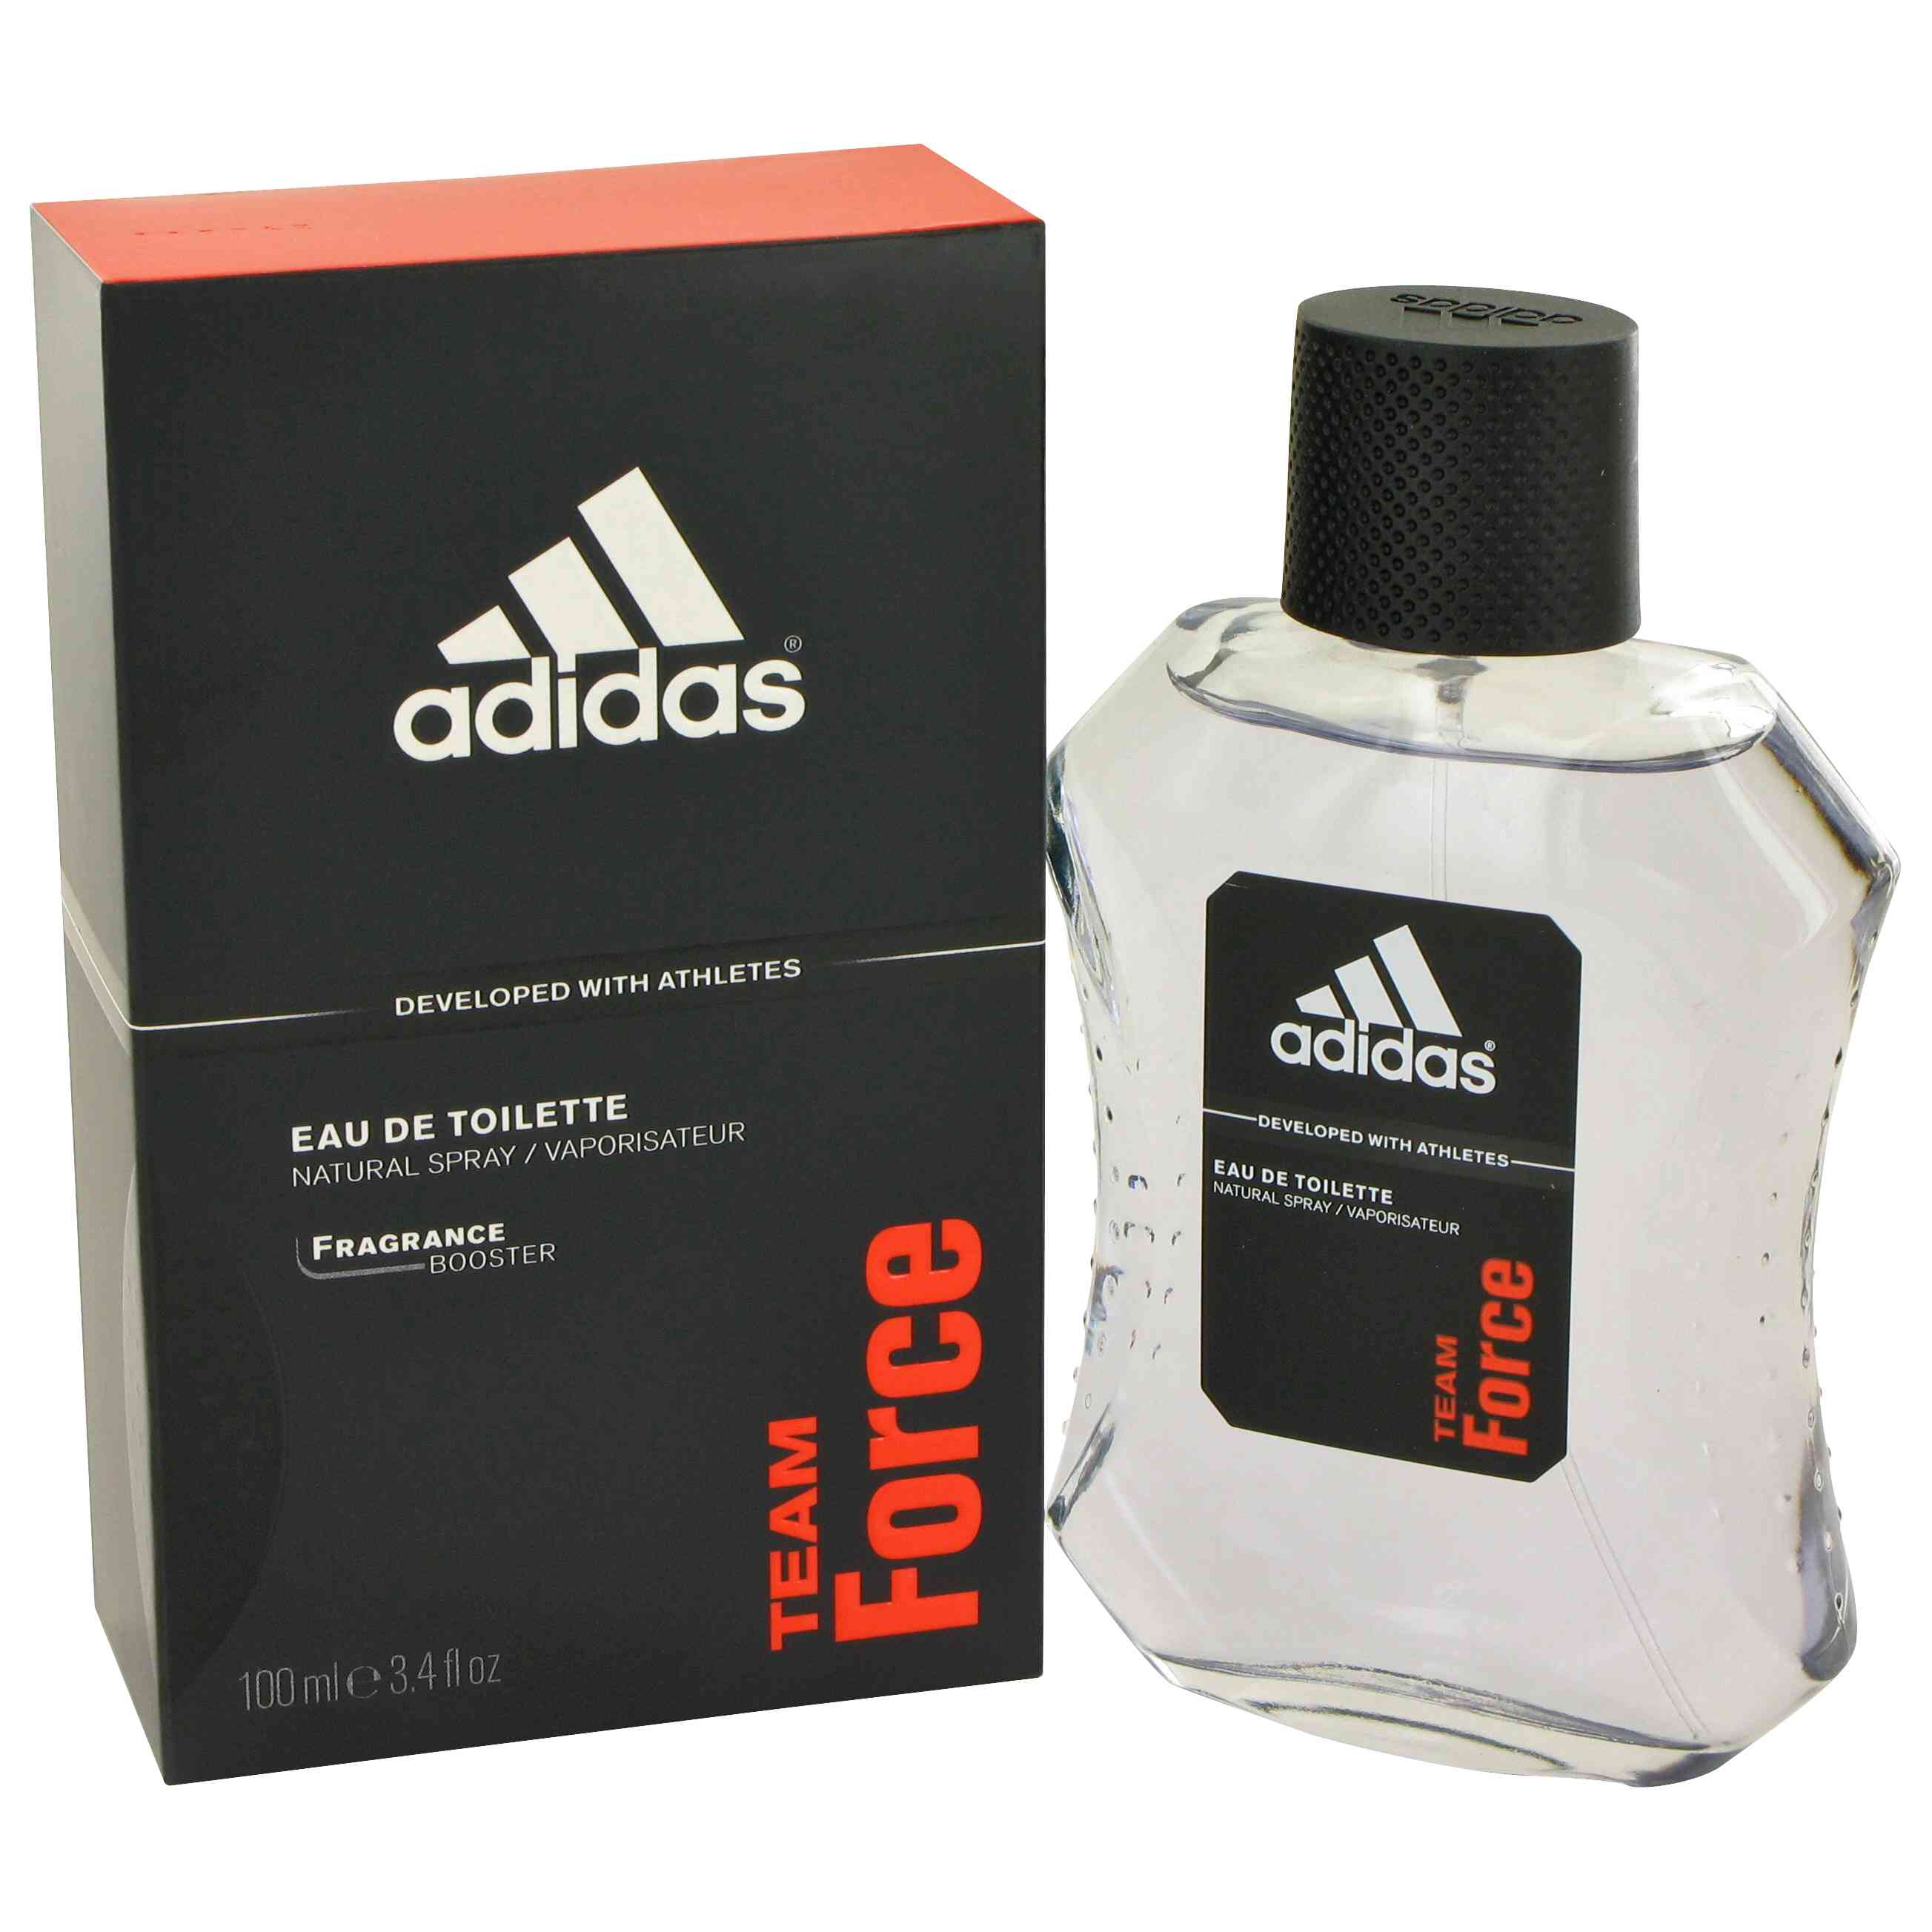 Special Offers :: Adidas EDT Perfume 100 ml (For Men) - ShopClues.com: